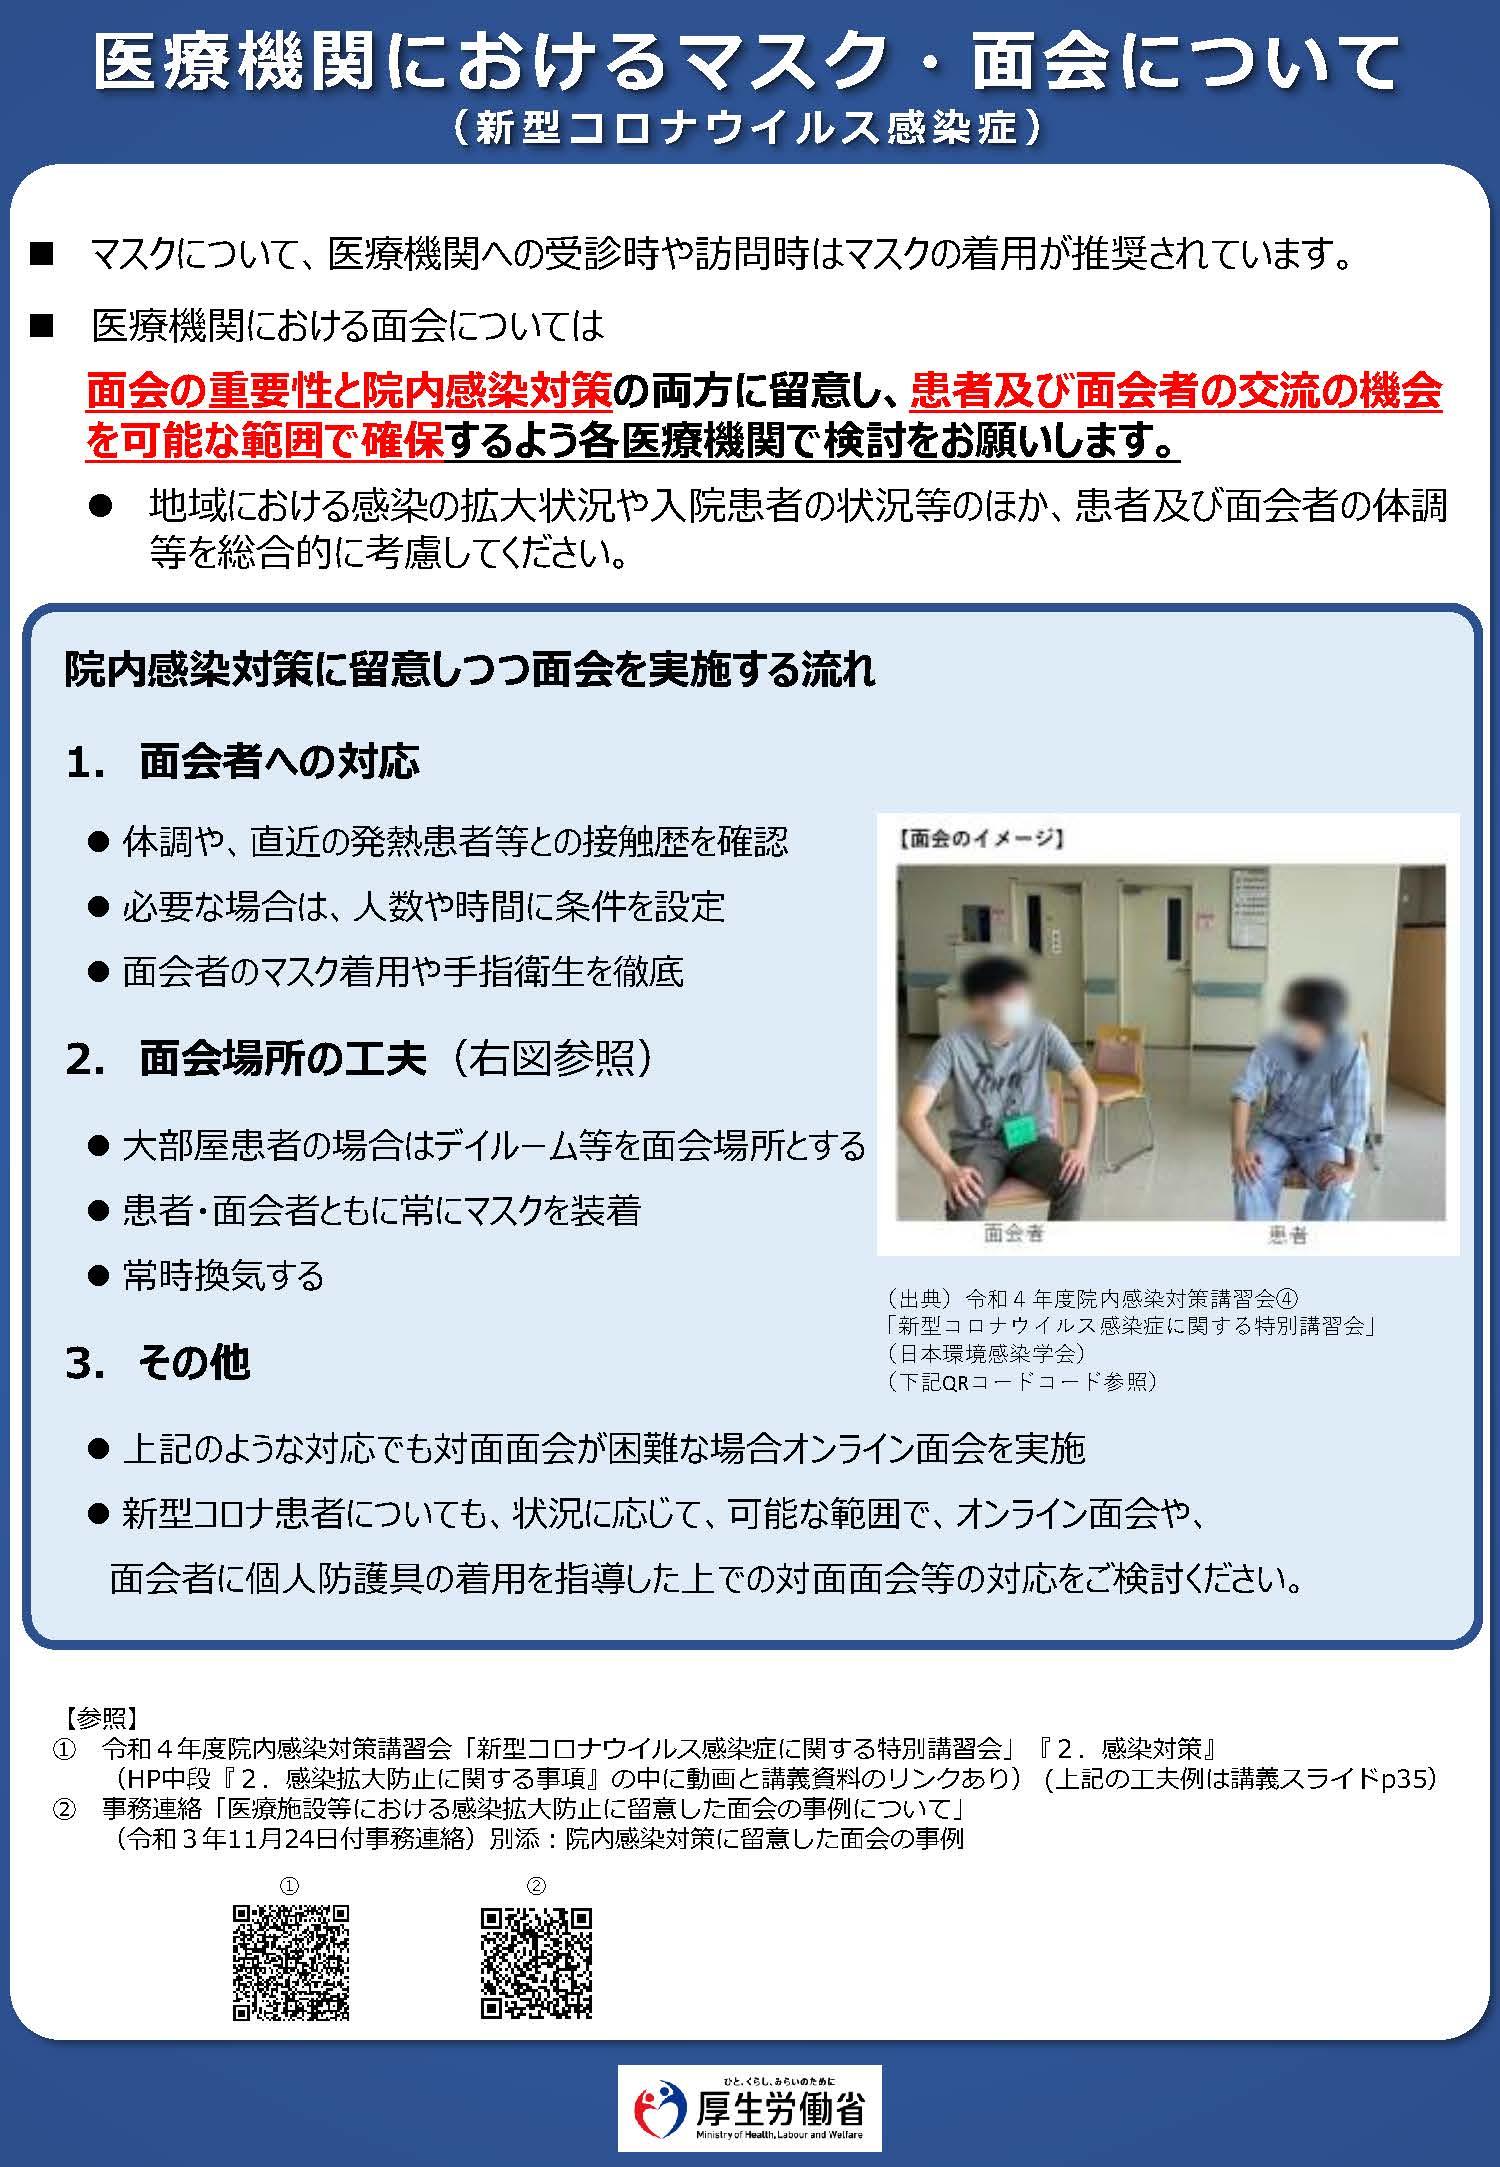 医療機関におけるマスク・面会について.jpg